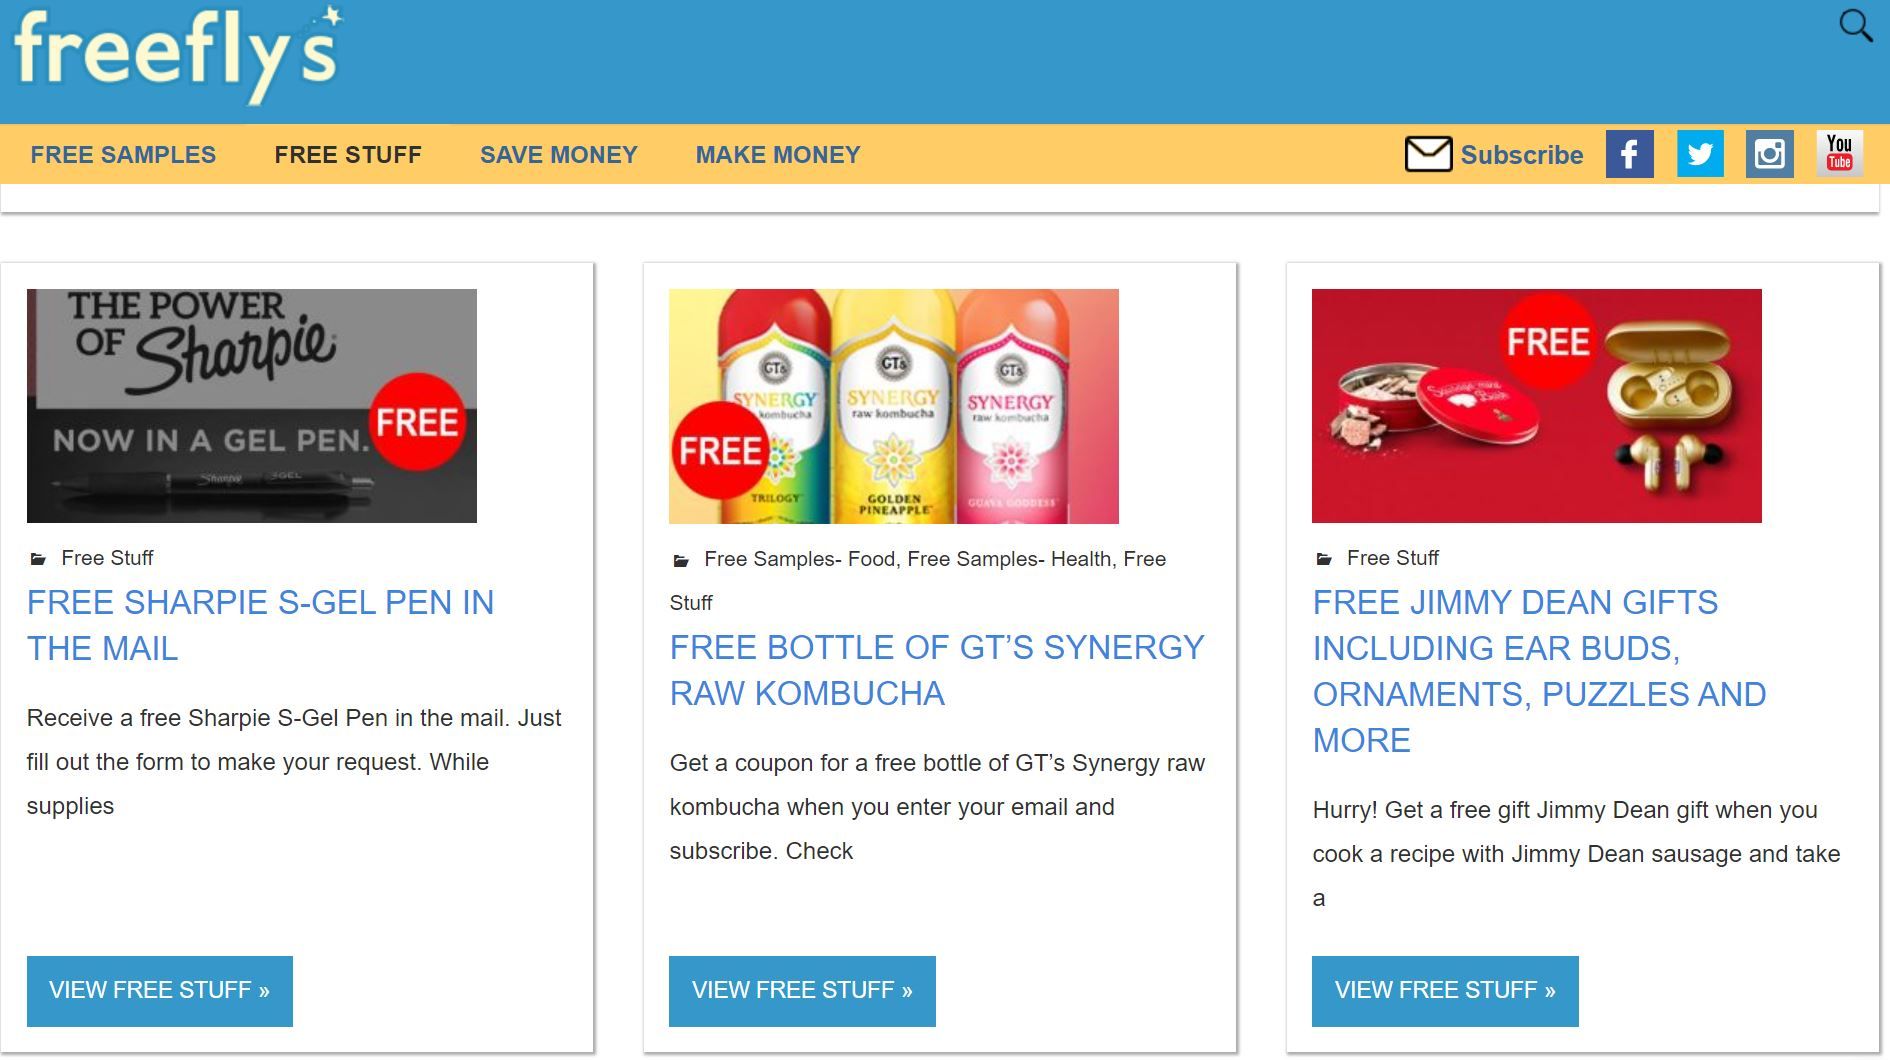 Die 7 besten Websites für die Online-Bewertung von Free Stuff - free stuff freeflys